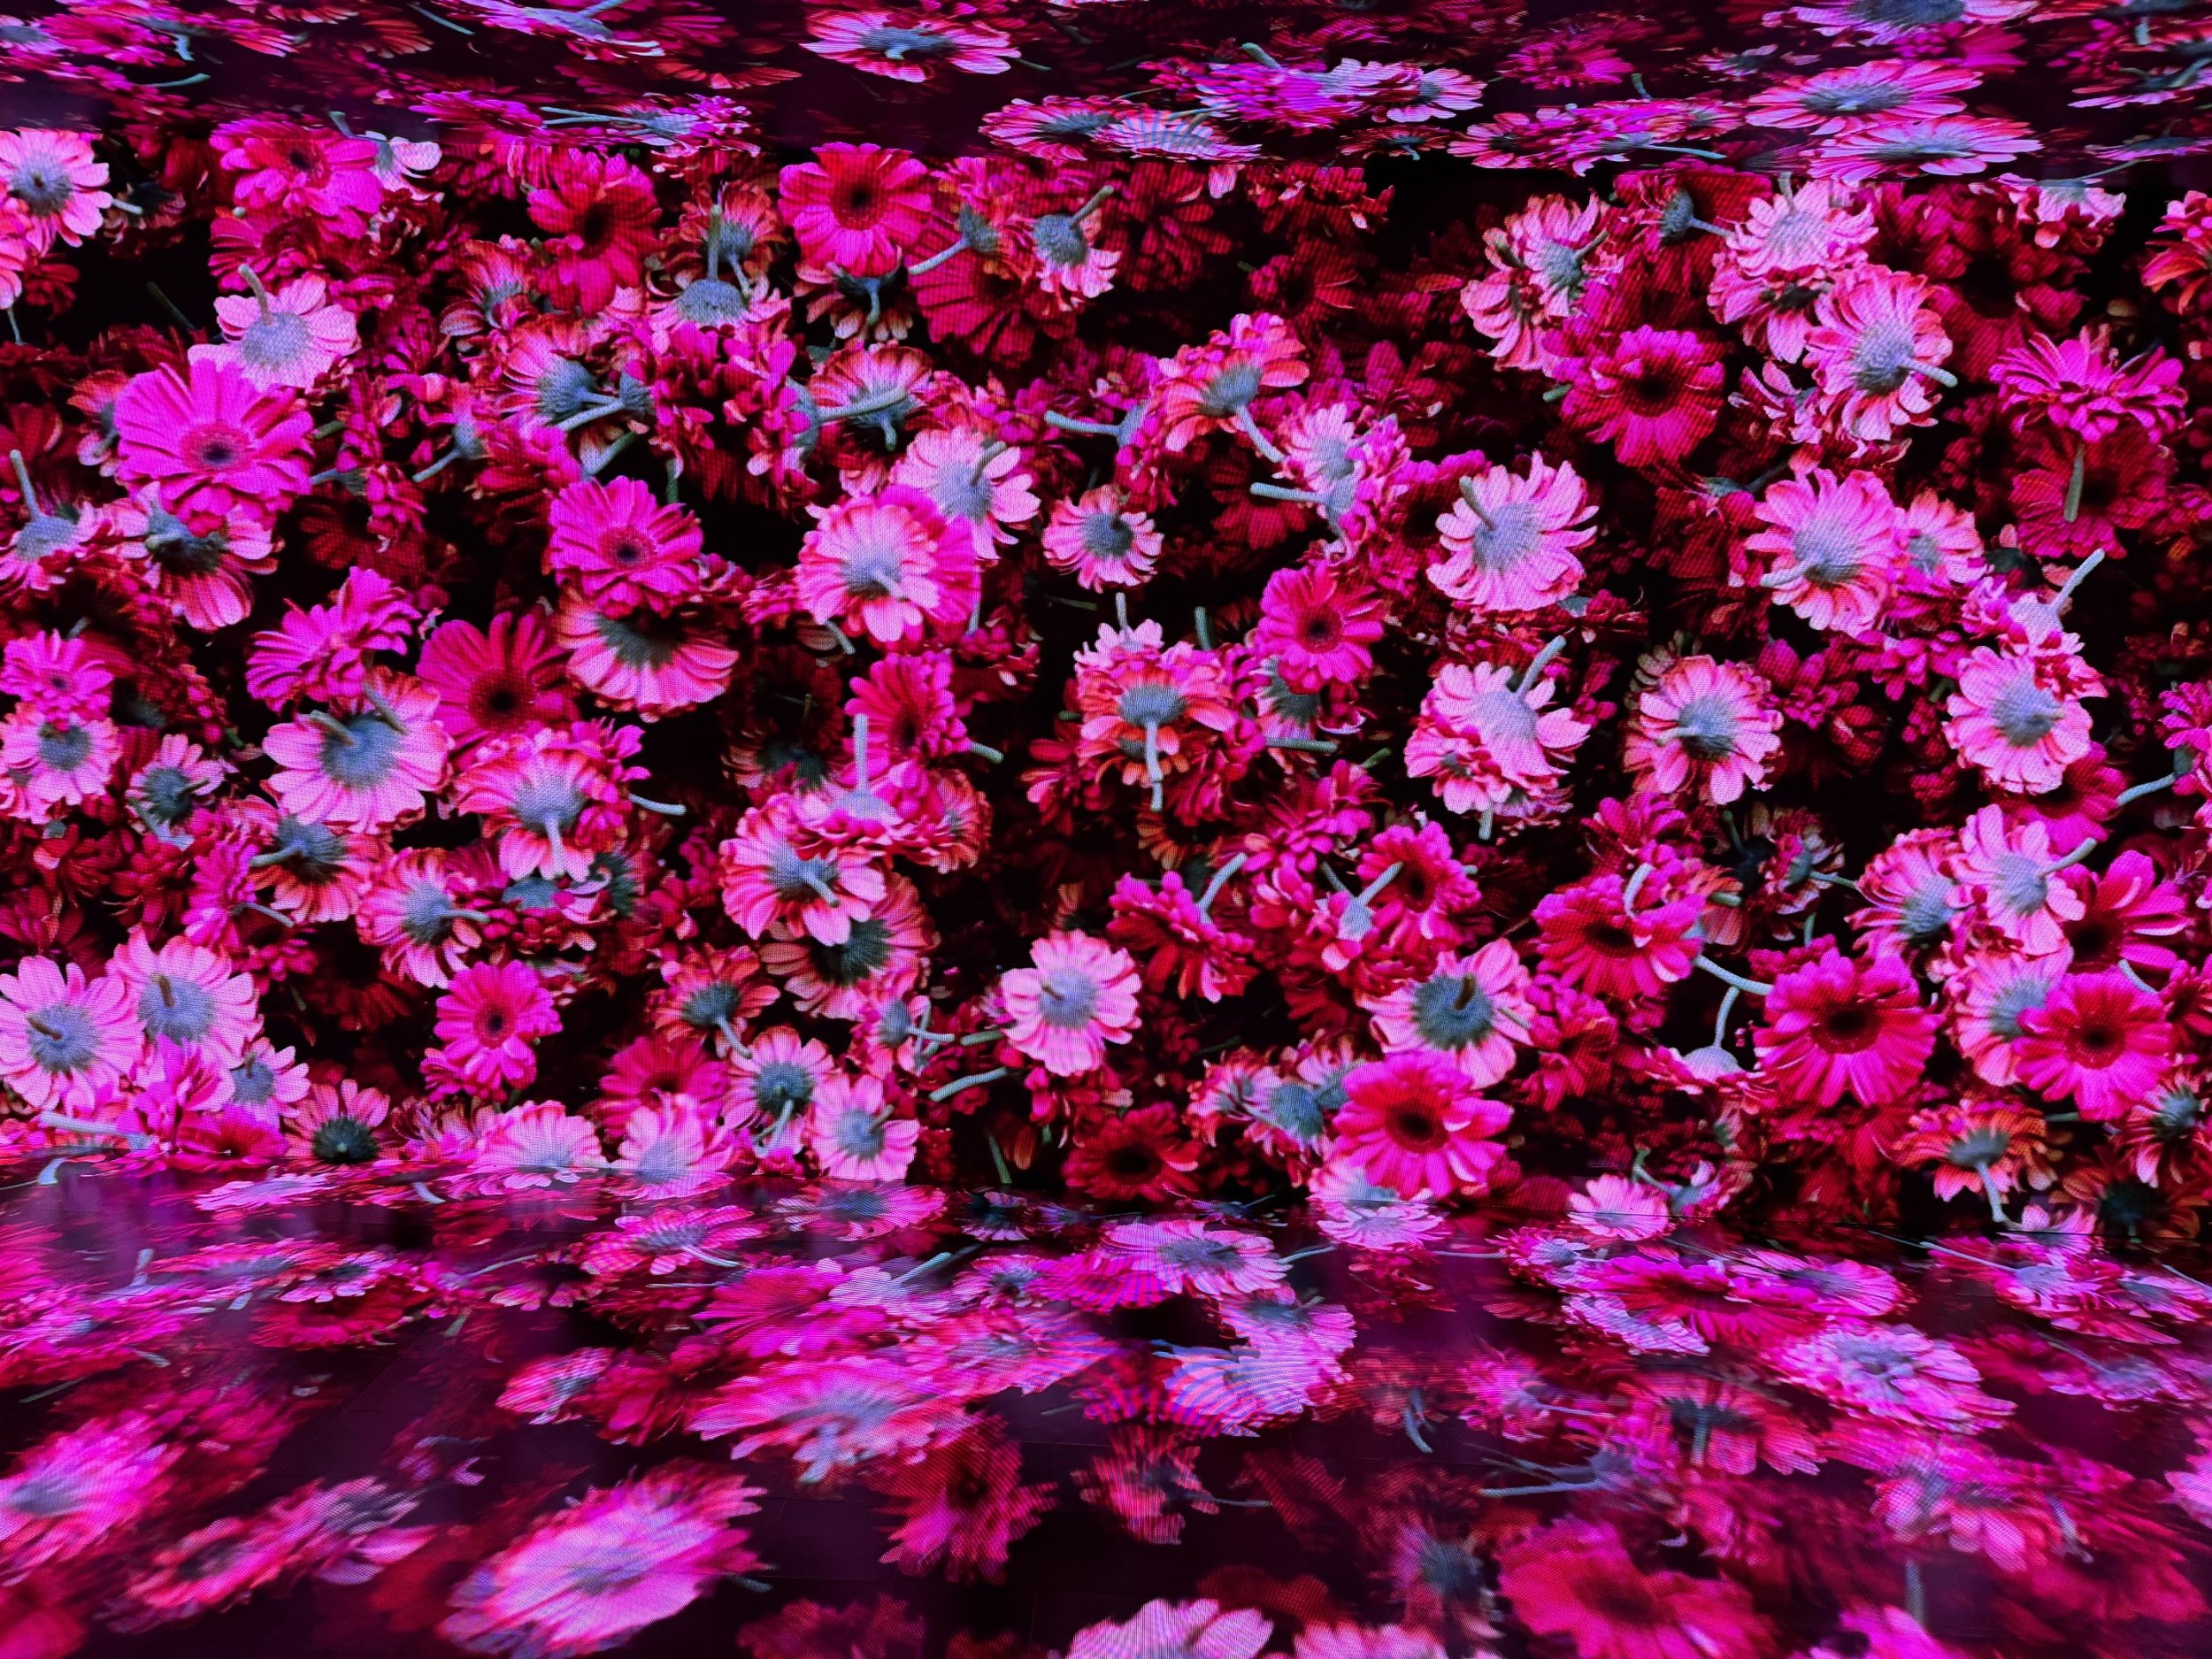 flowers 2.jpg